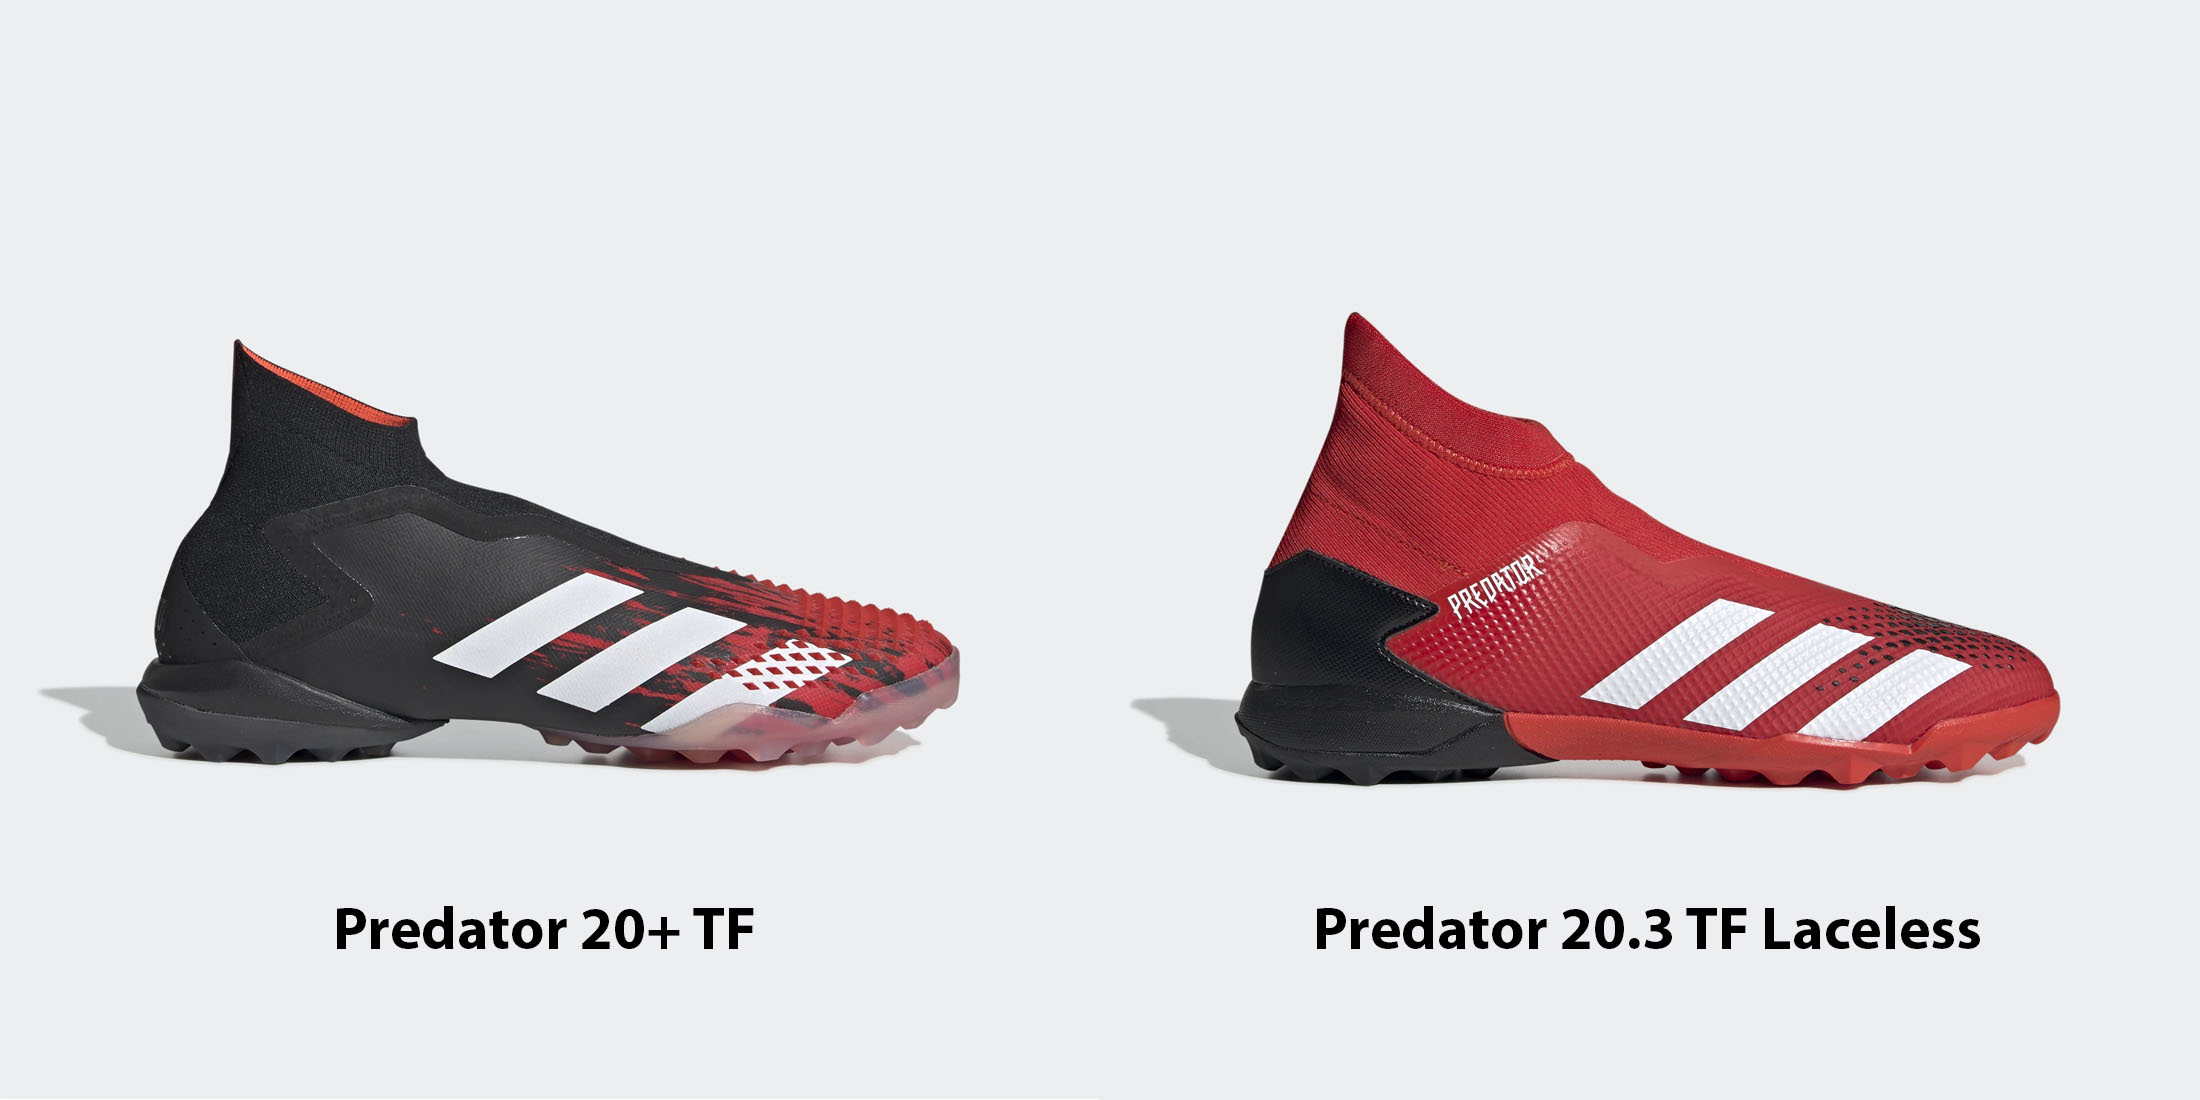 Thiết kế giày đá bóng Predator cao cổ không dây